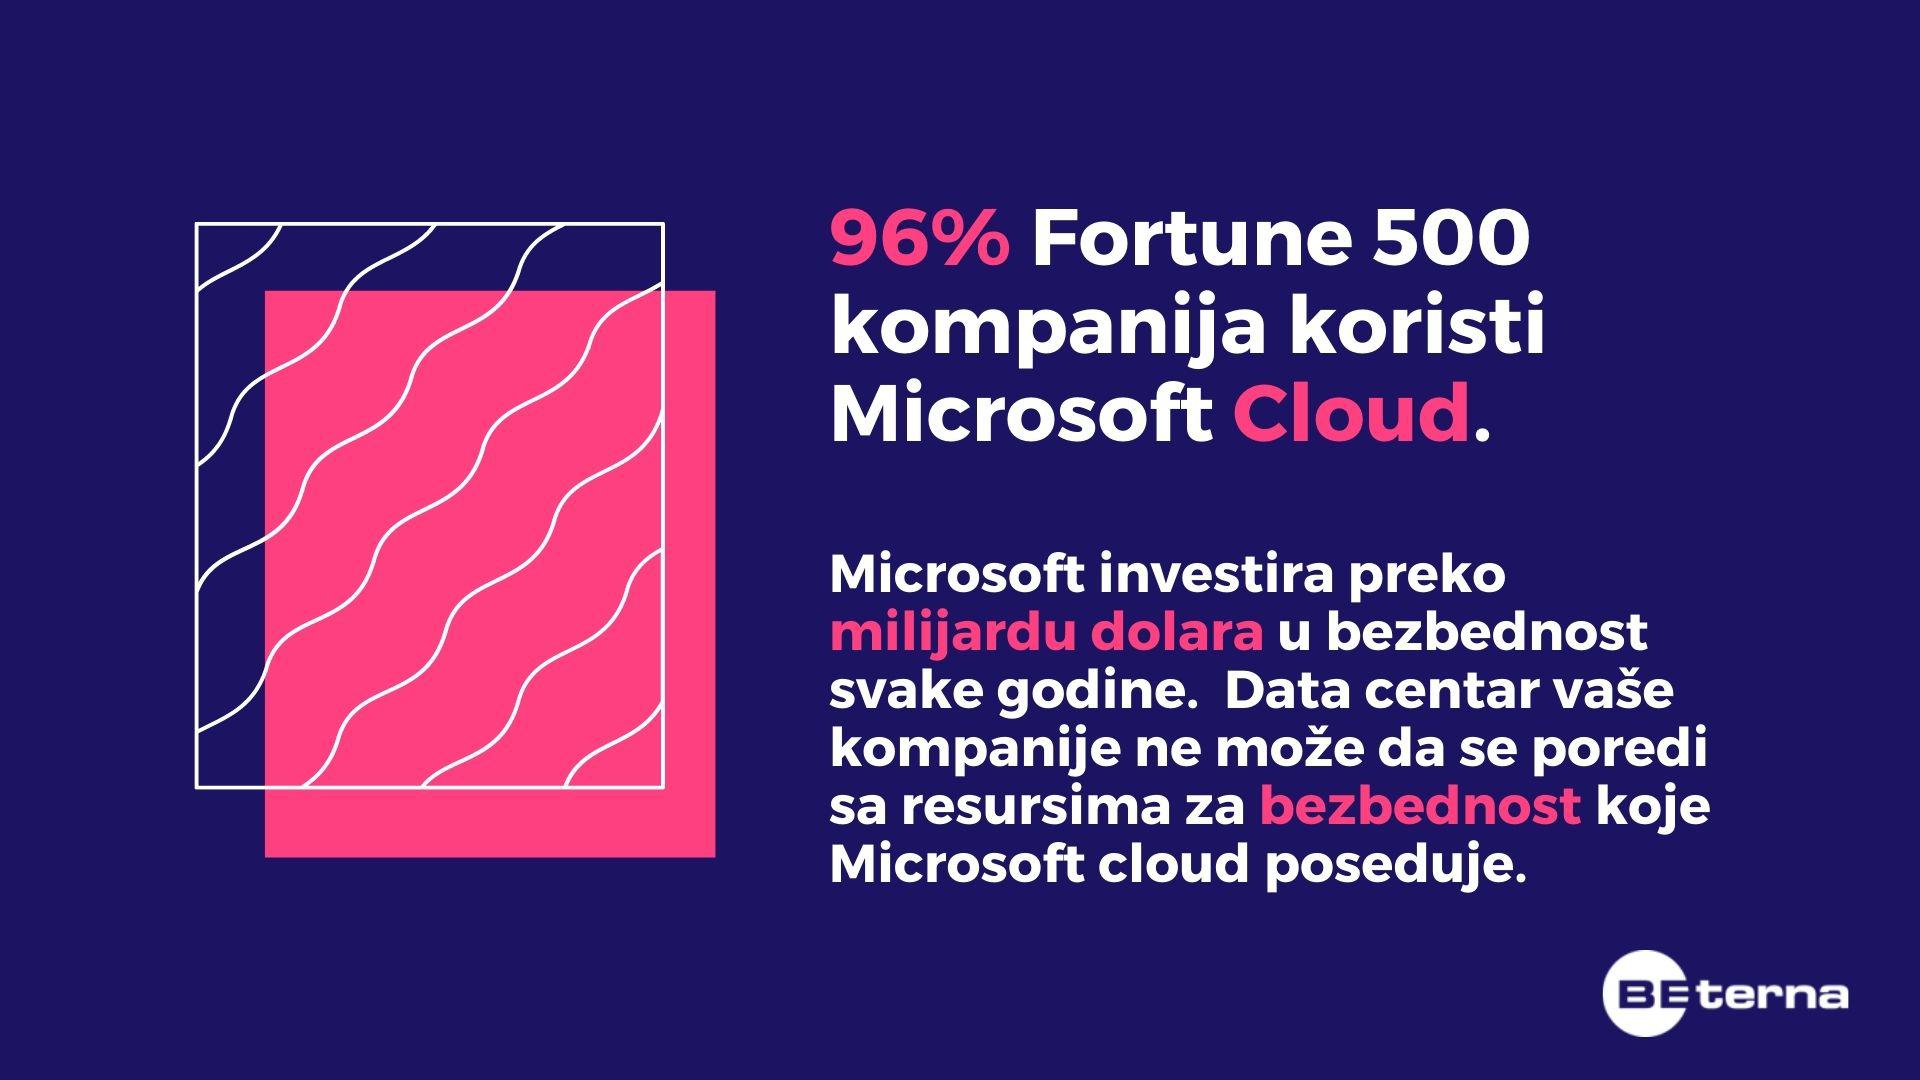 Fortune 500 kompanije koriste Microsoft Cloud